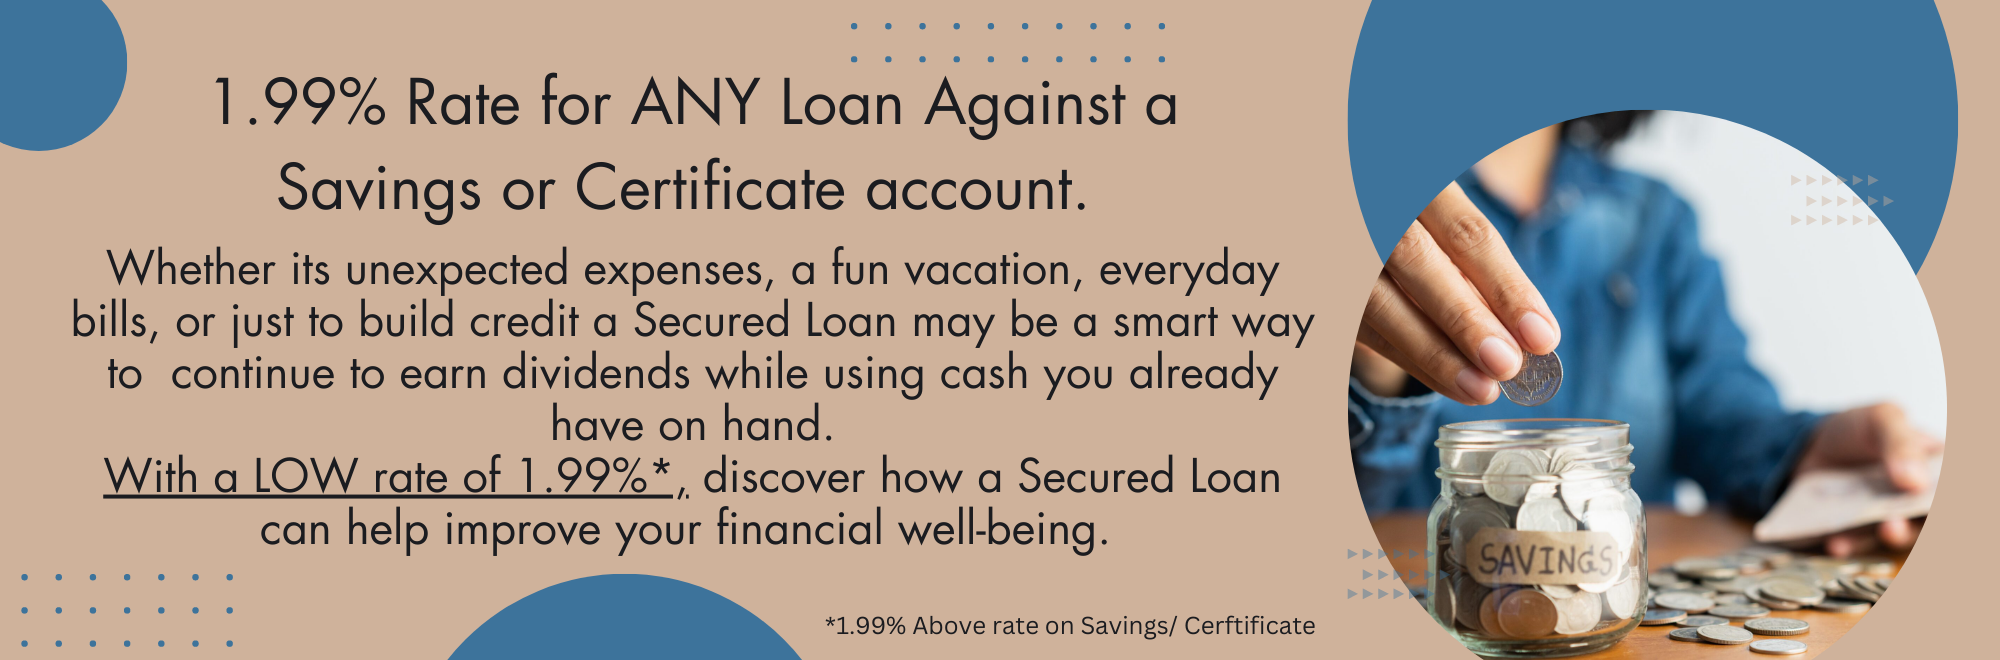 Share Loan